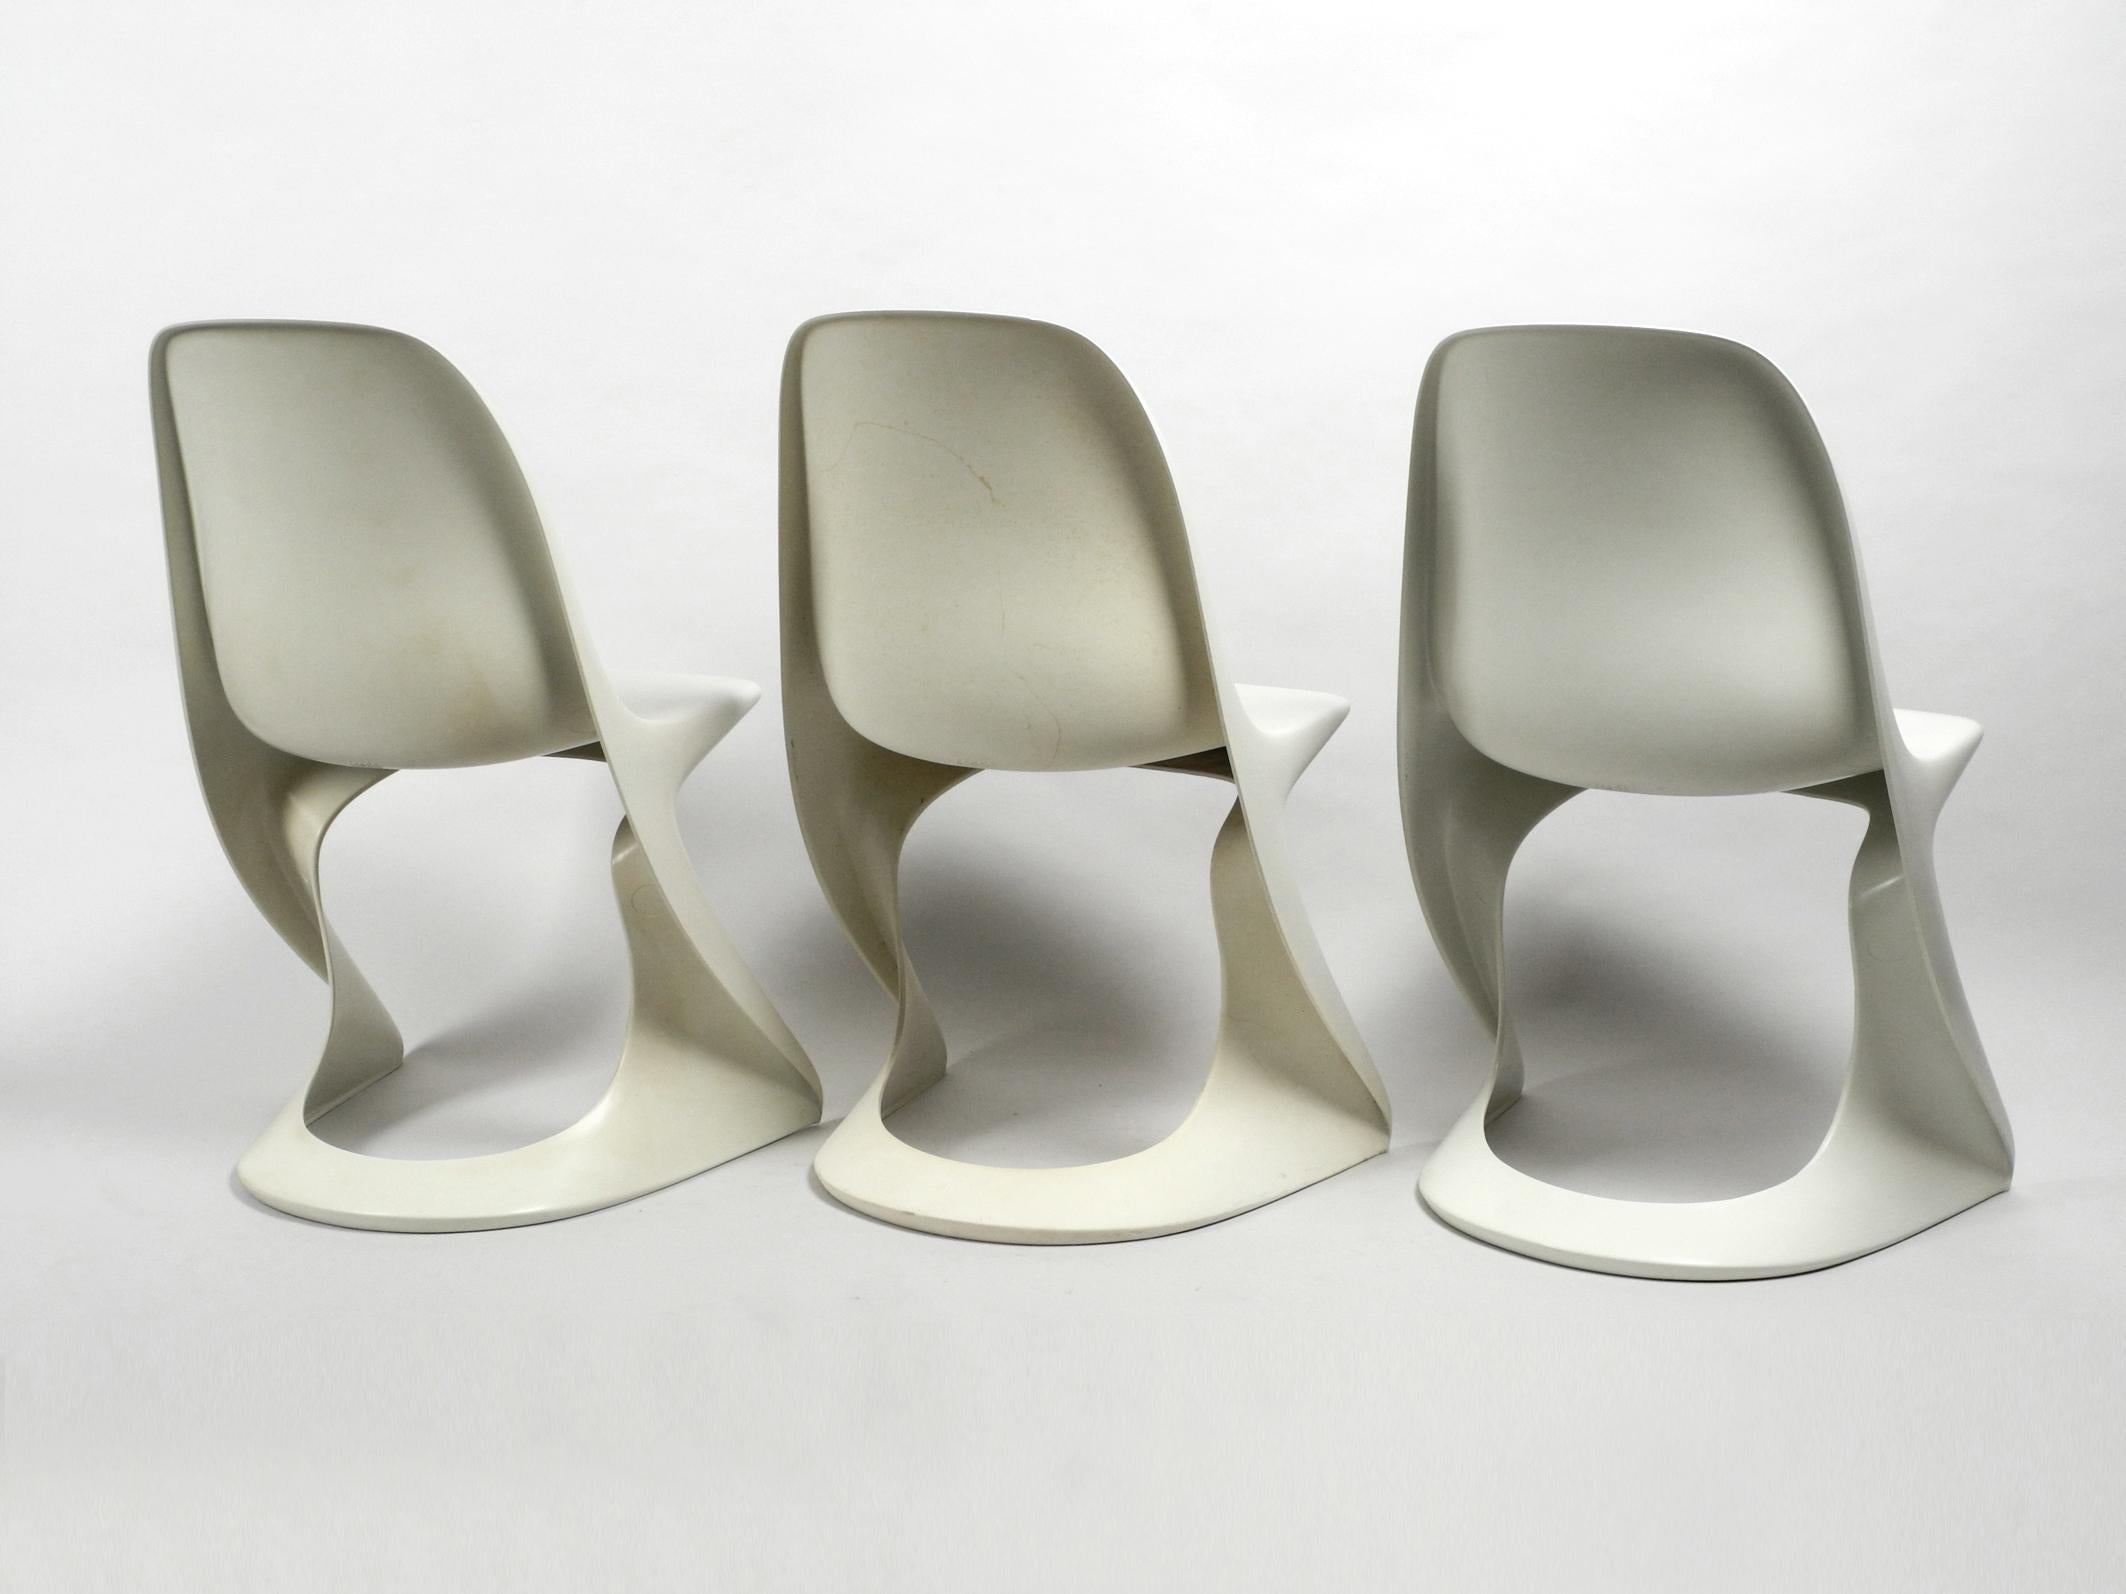 Drei Original Casalino Stühle von Casala Modell 2004/2005 aus den Jahren 1973 und 1980 (Space Age)